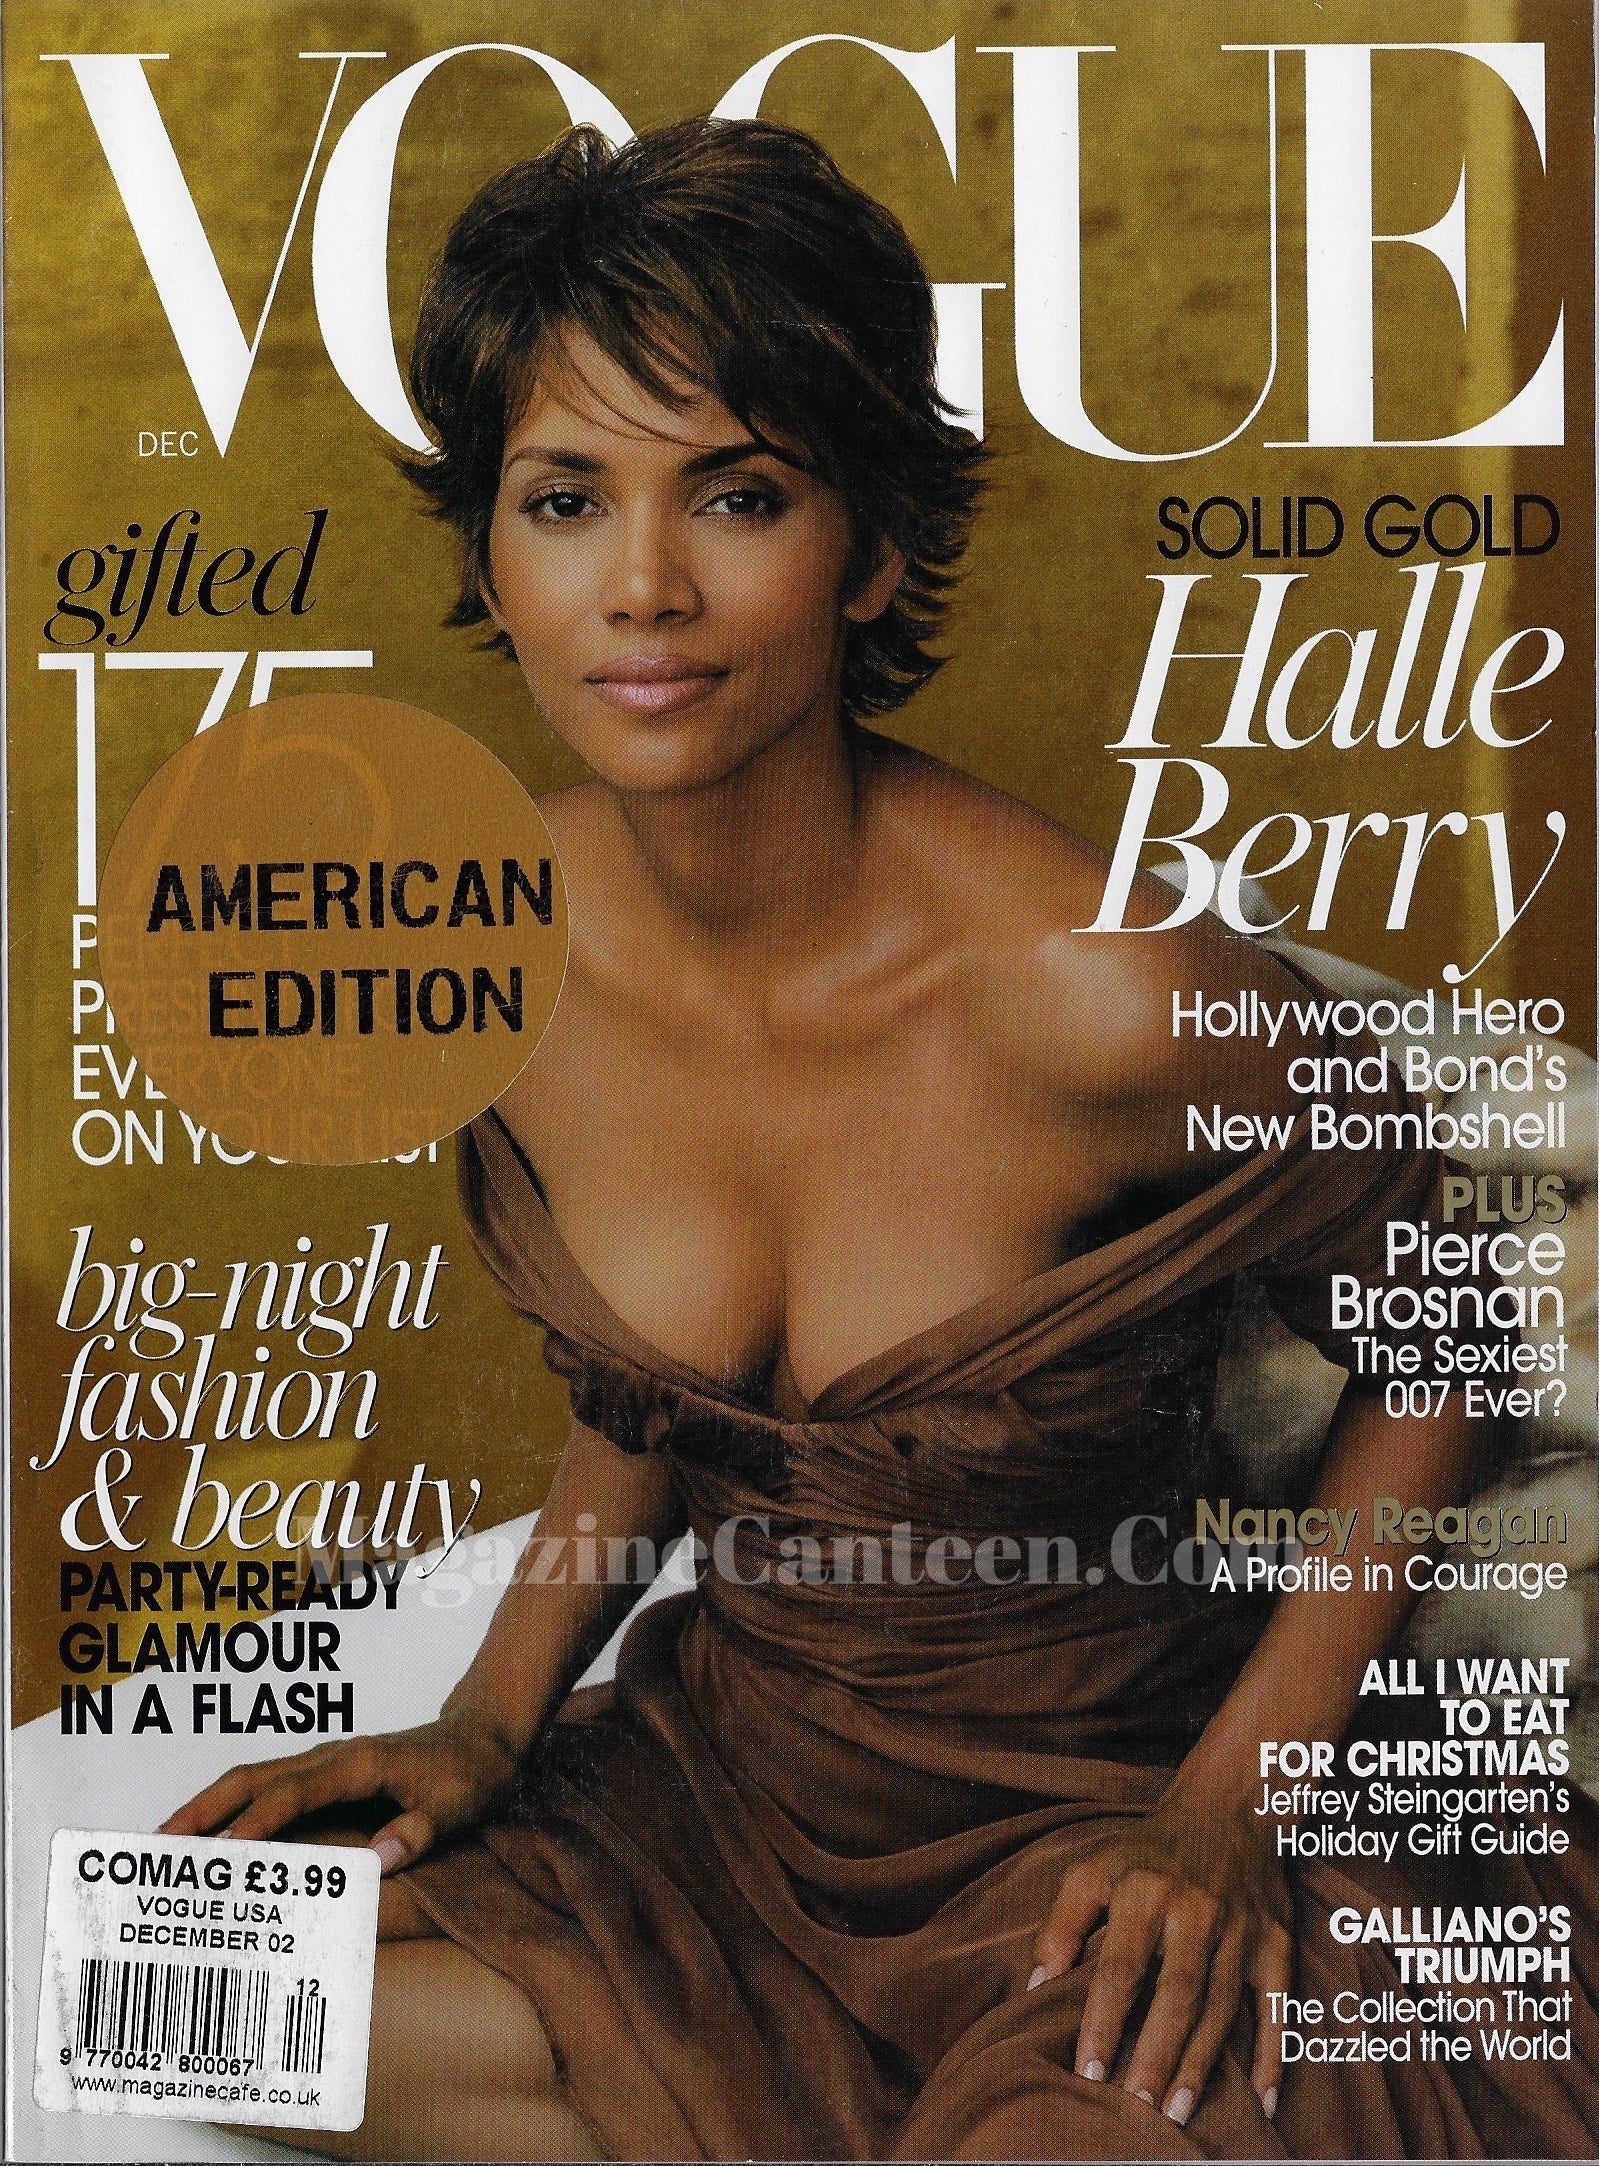 Vogue USA Magazine December 2002 - Halle Berry